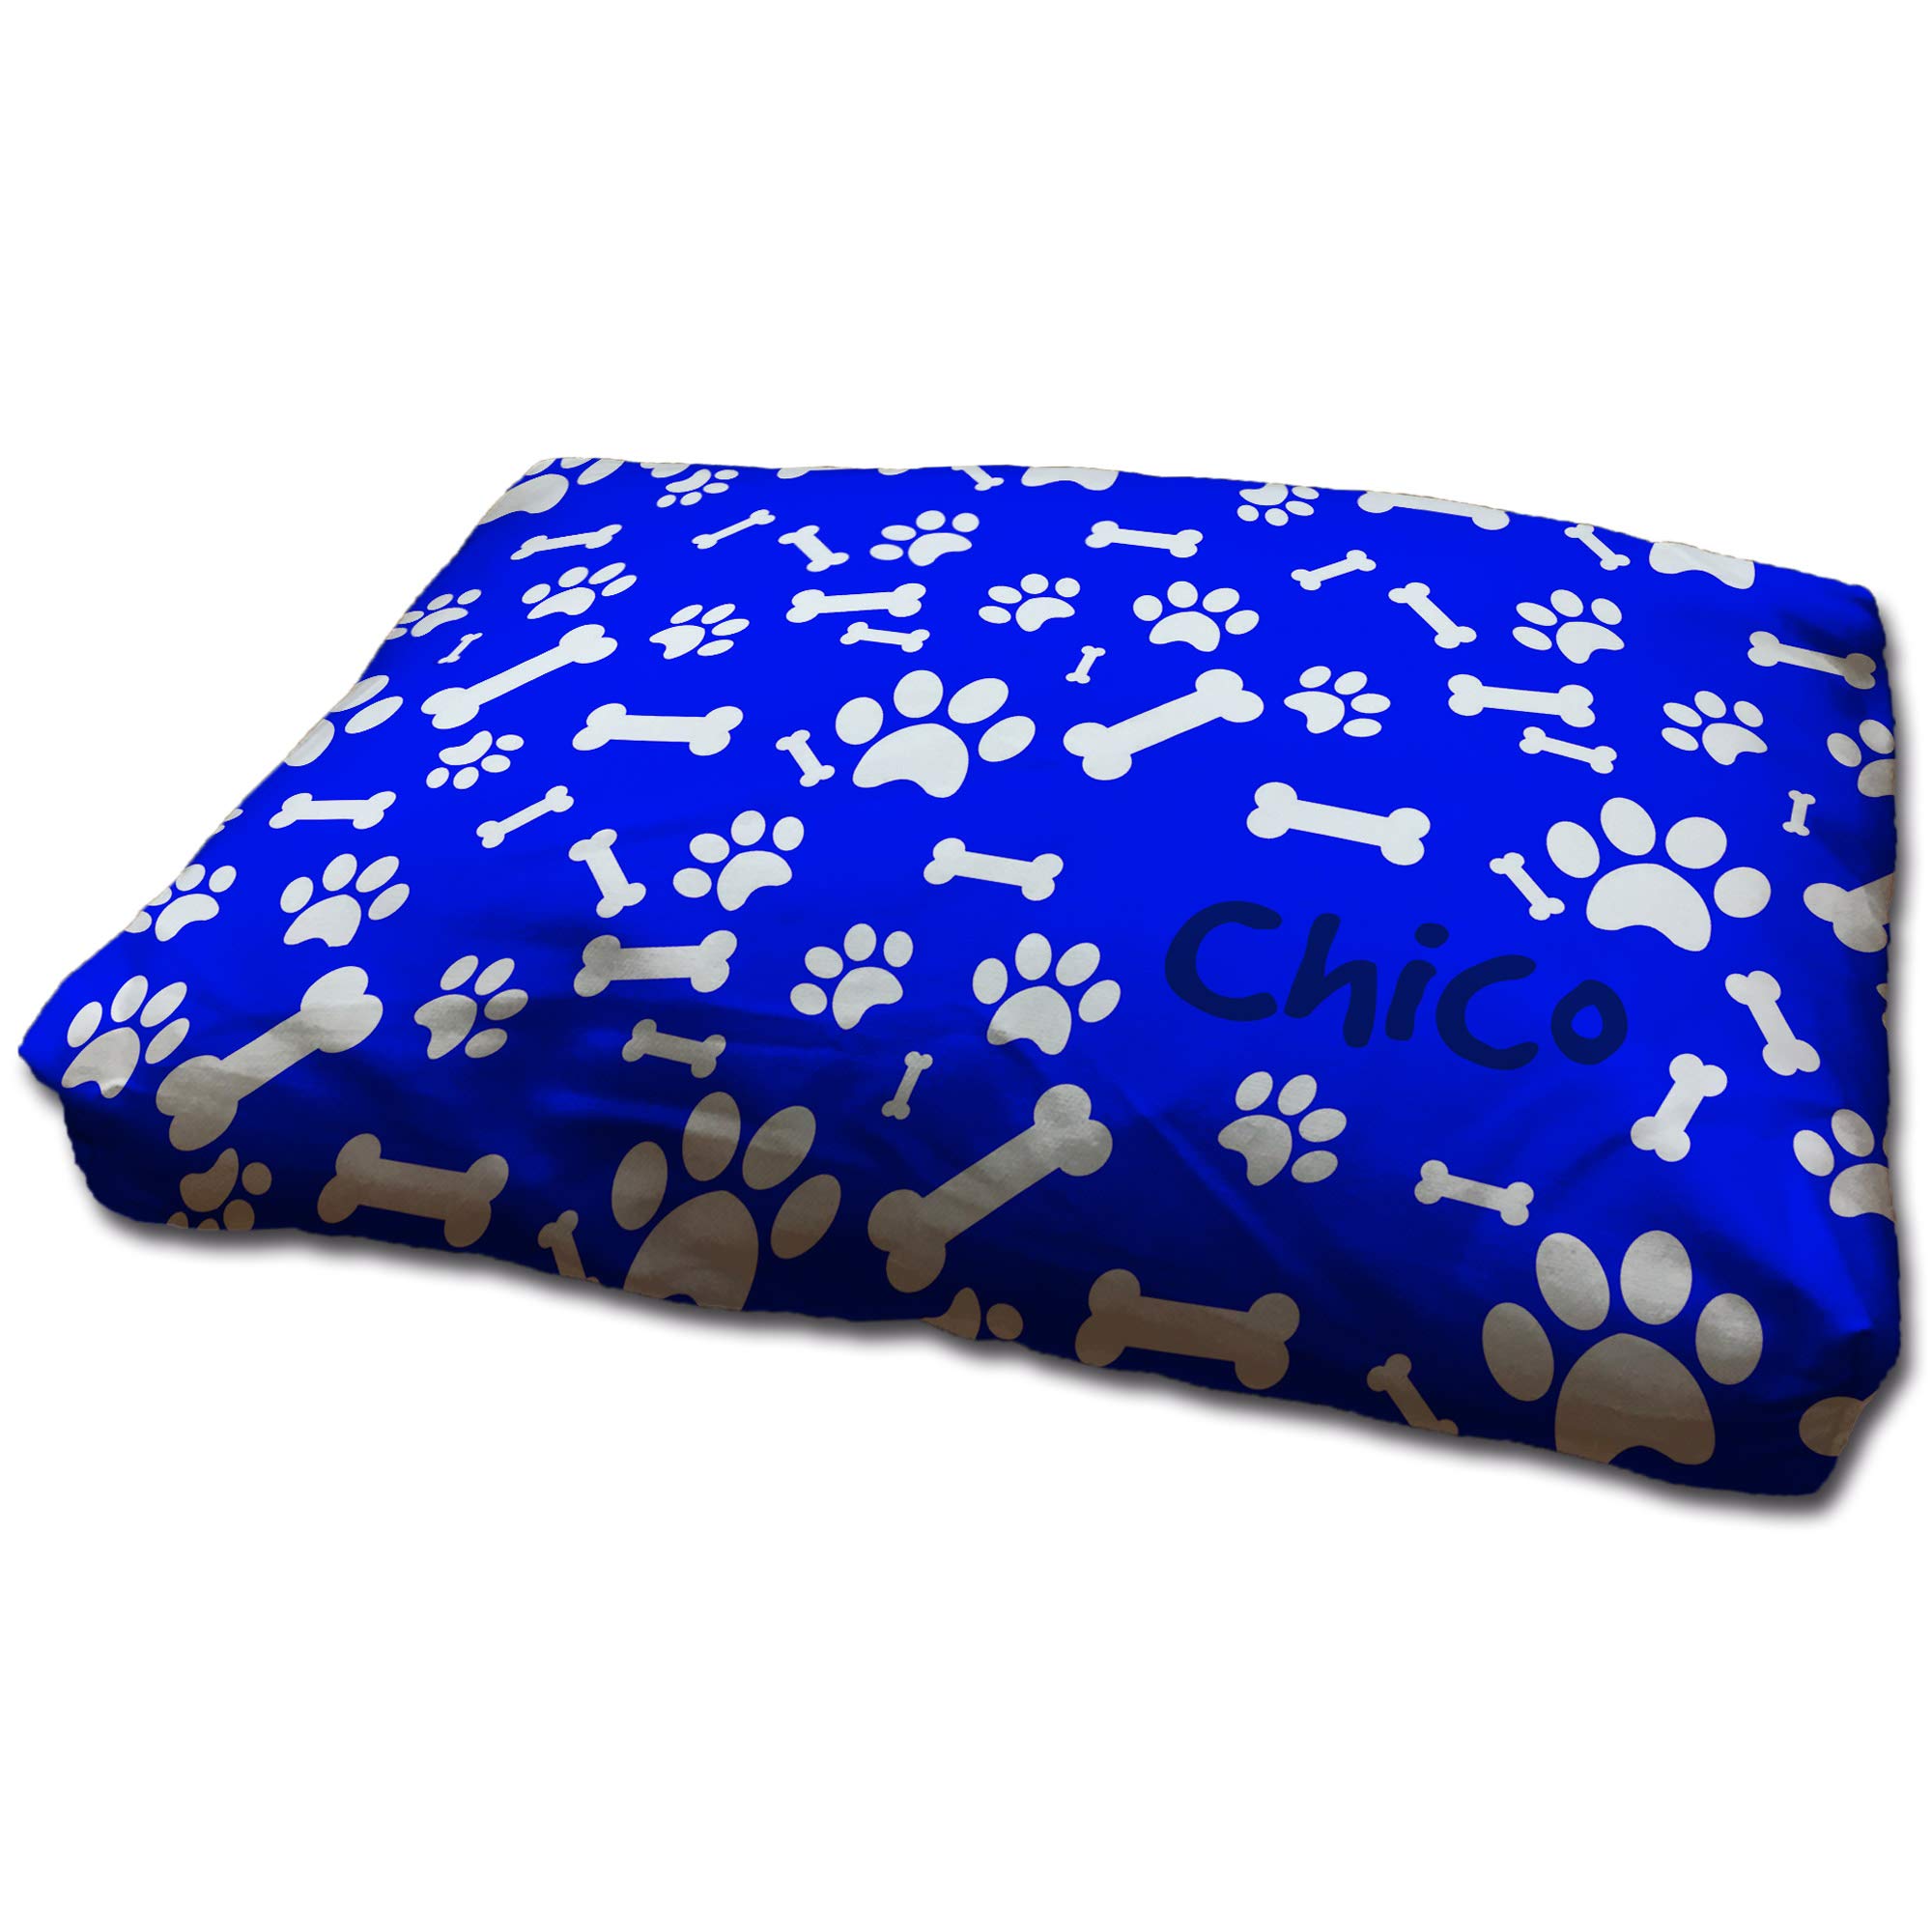 LolaPix Hundebett. Hundekissen. Personalisiert mit Name/Foto. Bett für große/Mittlere/Kleine Hunde. Waschbare Hundematratze und Abnehmbarer Bezug. HUELLAS Azules